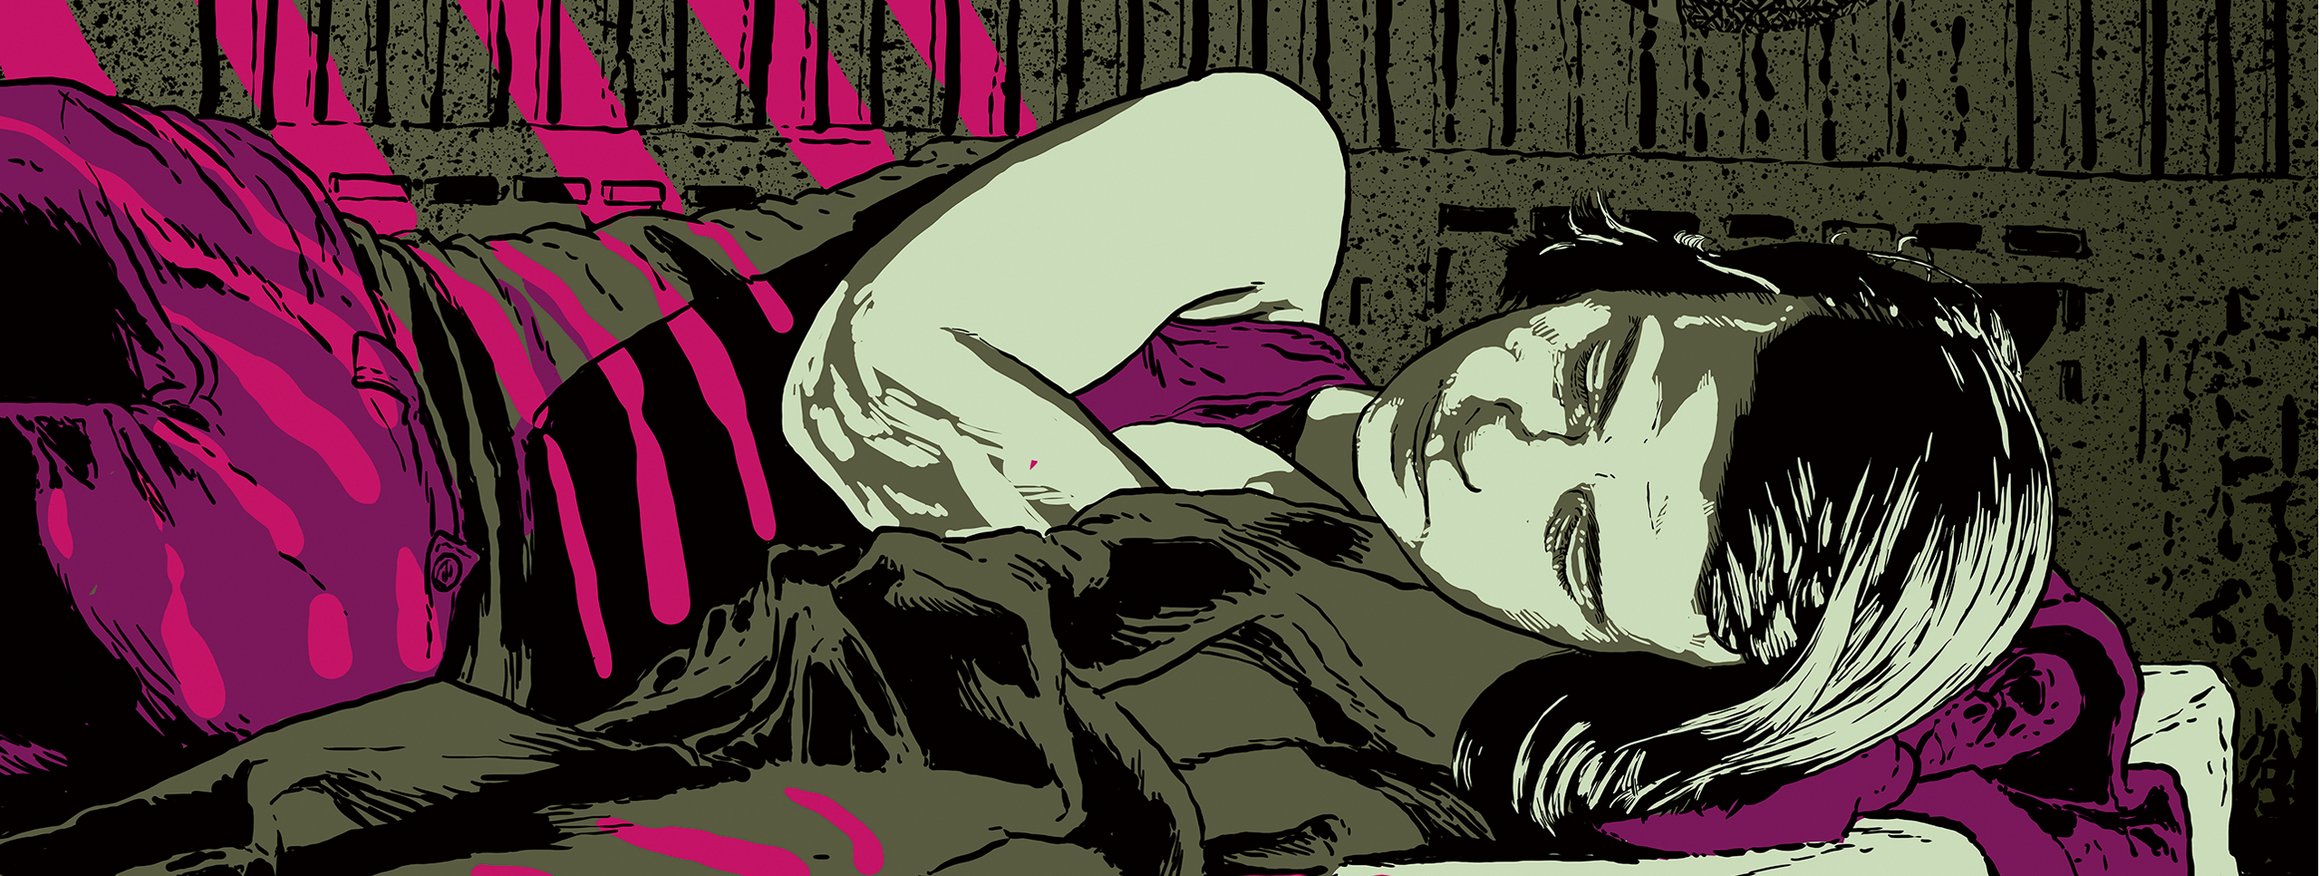 Die Illustration zeigt Sophie Scholl, die in ihrer Gefängniszelle schläft und träumt, dass sie Mutter geworden ist